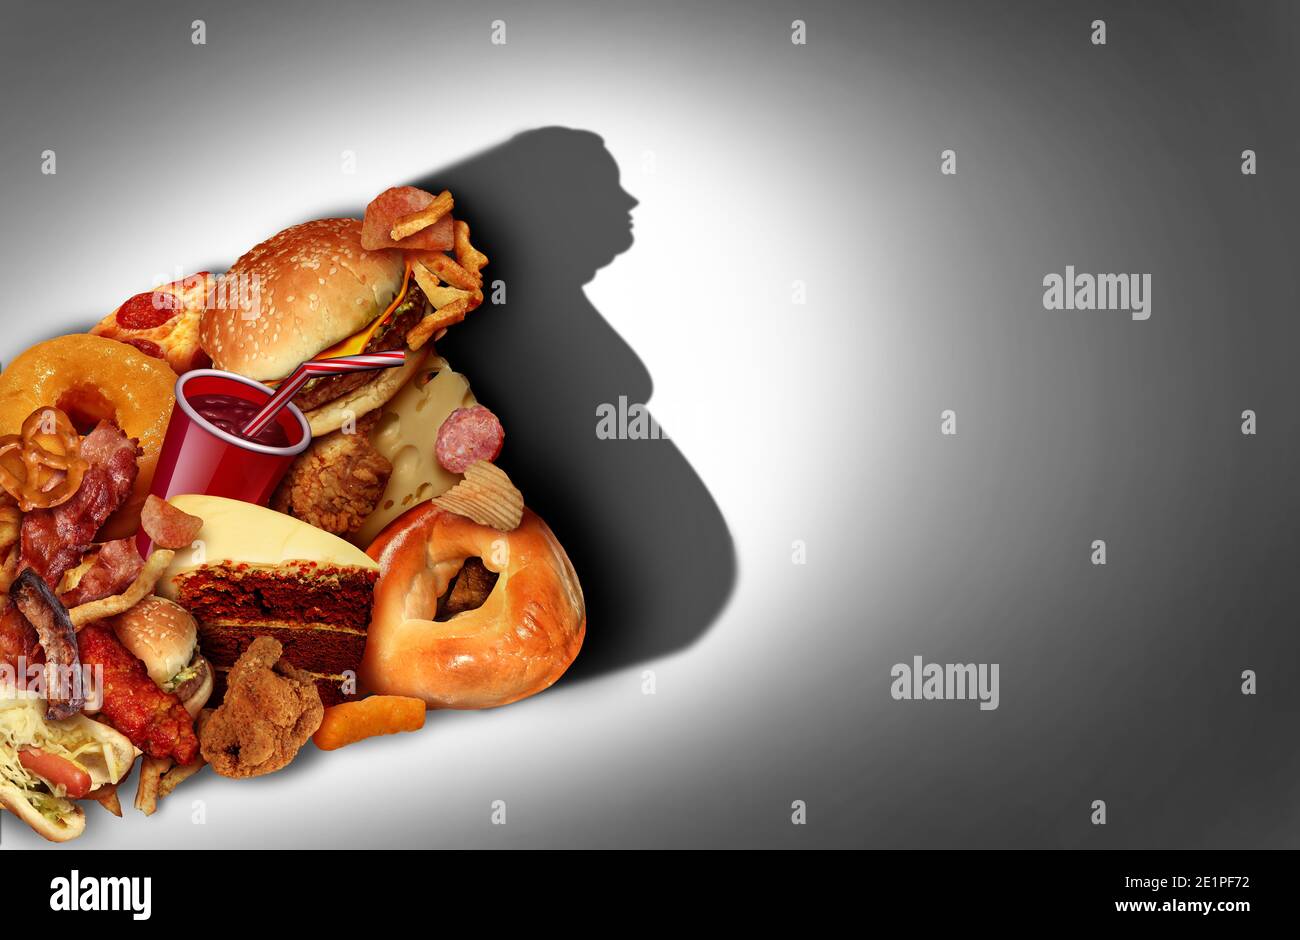 Adipositas und ungesunde Lebensweise oder Essen fetthaltige Lebensmittel Konzept als Fast-Food und schlechte Ernährung als fettleibig Symbol für Ernährung und Übergewicht Kontrolle. Stockfoto